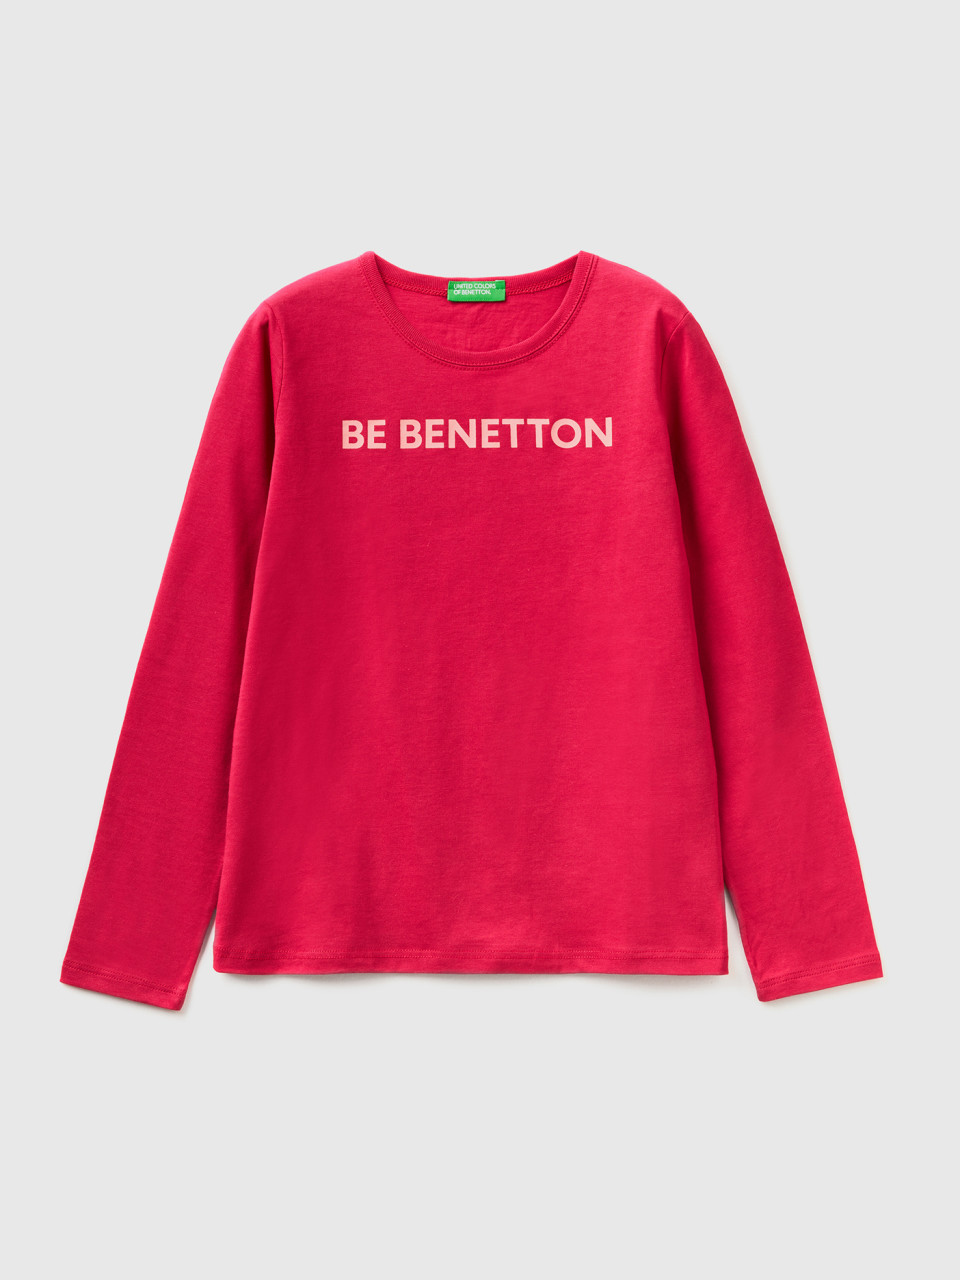 Benetton, Long Sleeve 100% Cotton T-shirt, Cyclamen, Kids